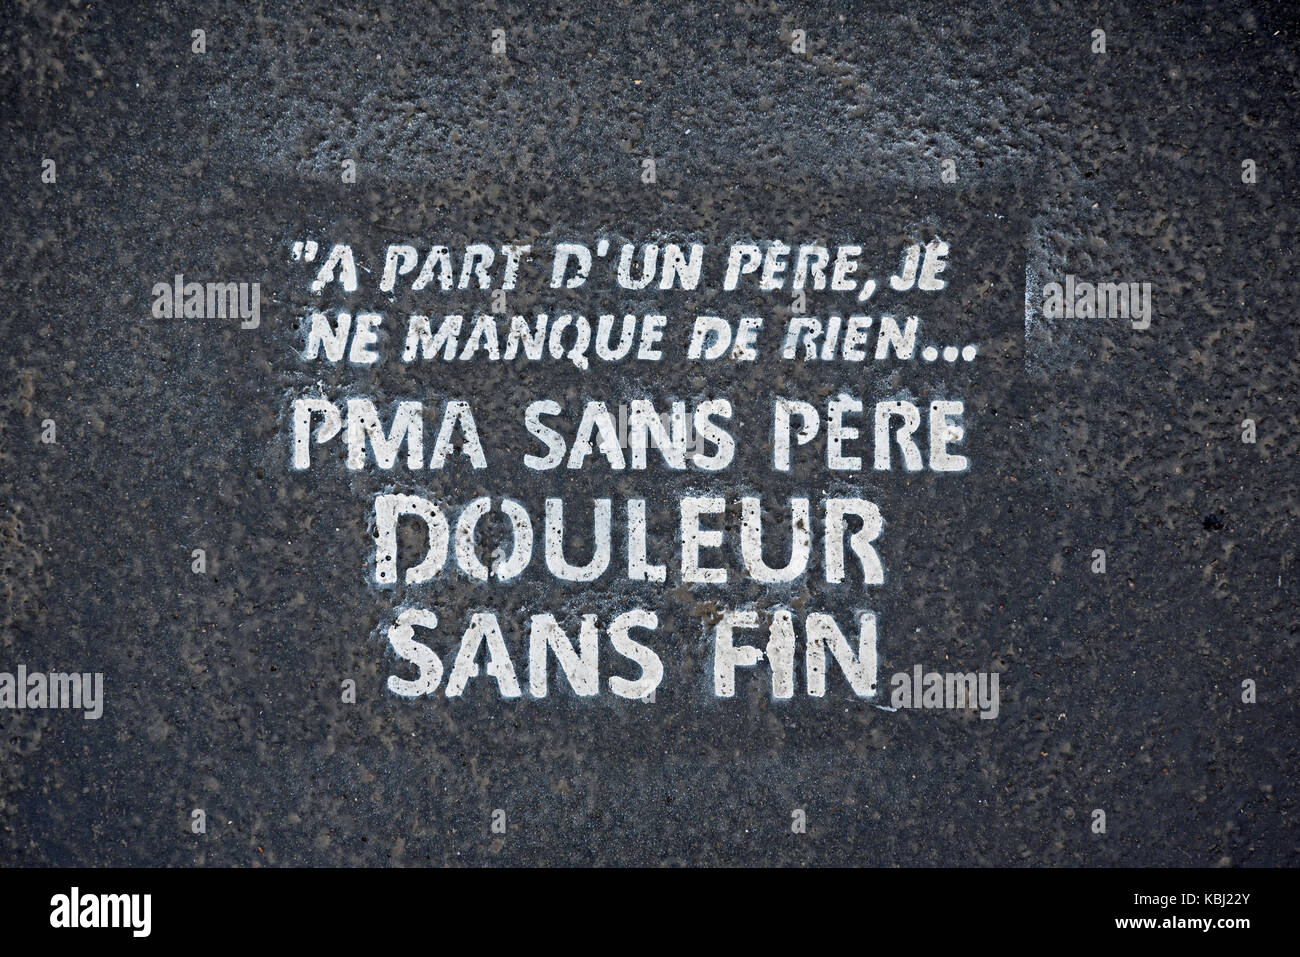 "PMA Sans pere stencil en una acera de París, Francia. Foto de stock